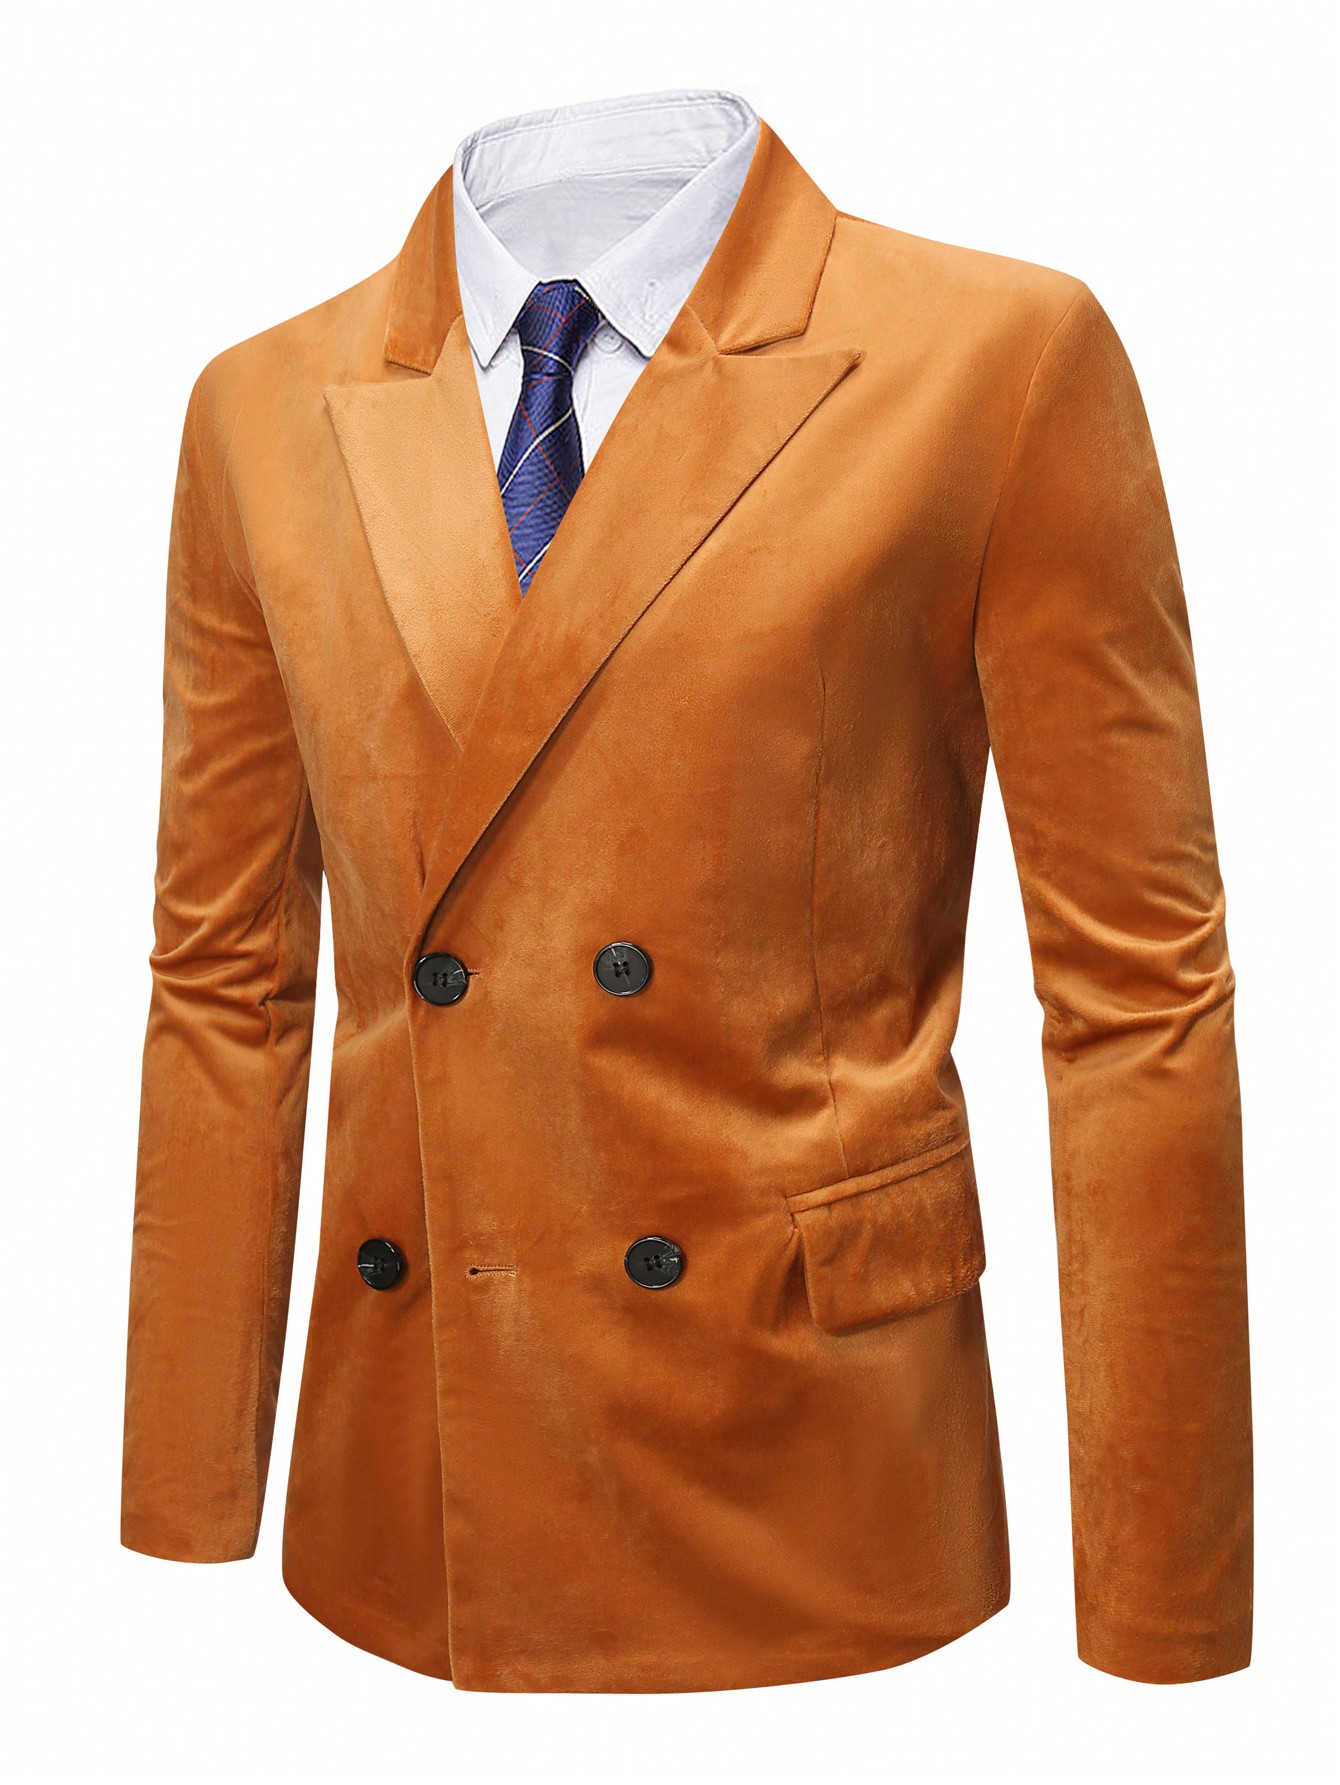 Мужской двубортный пиджак Manfinity Mode размера плюс, апельсин мужской однотонный костюм с воротником стойкой manfinity mode черный